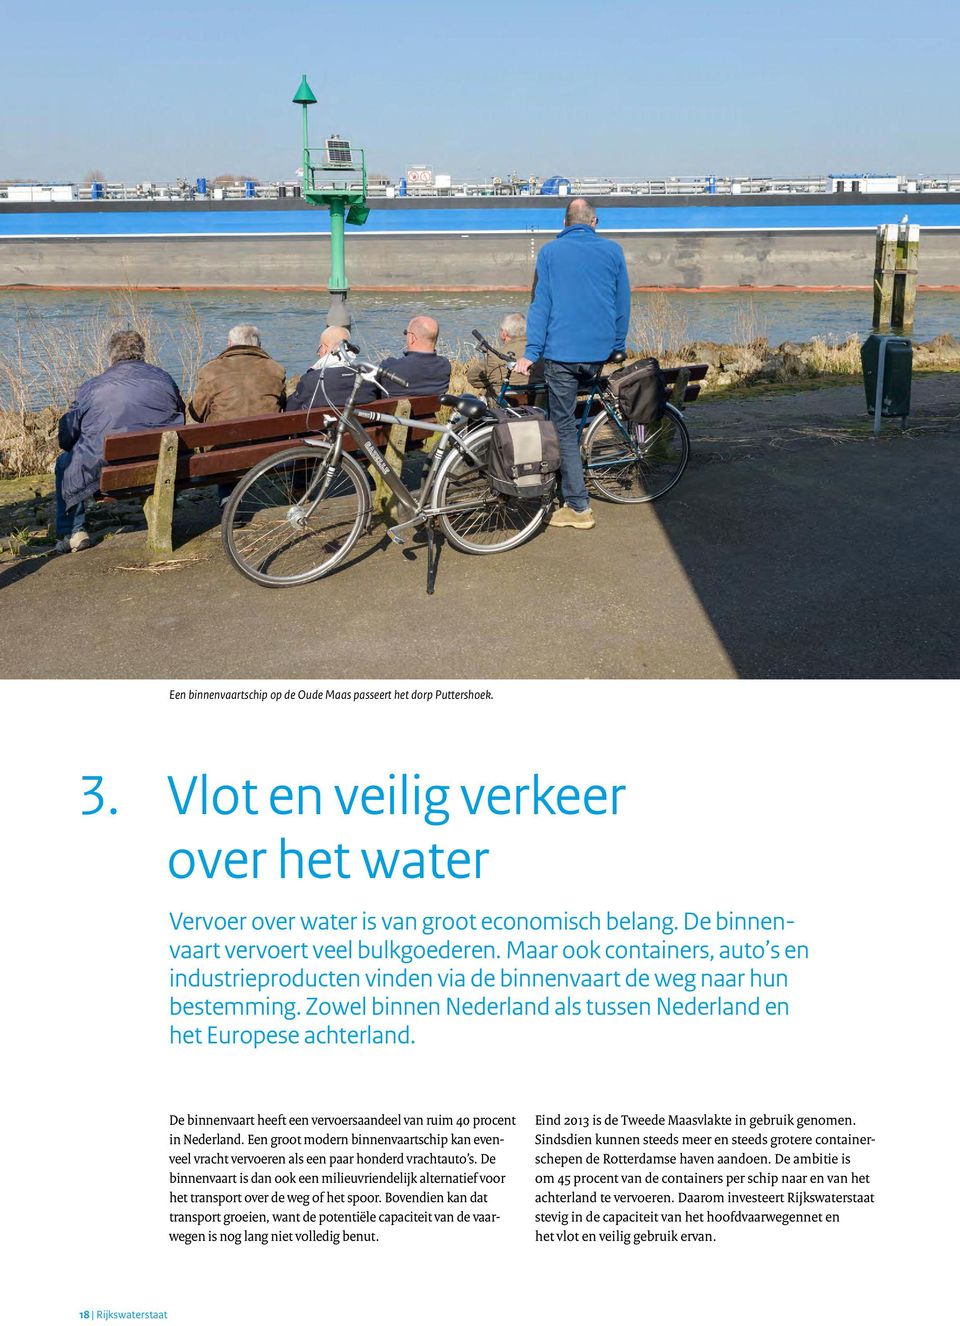 Zowel binnen Nederland als tussen Nederland en het Europese achterland. De binnenvaart heeft een vervoersaandeel van ruim 40 procent in Nederland.